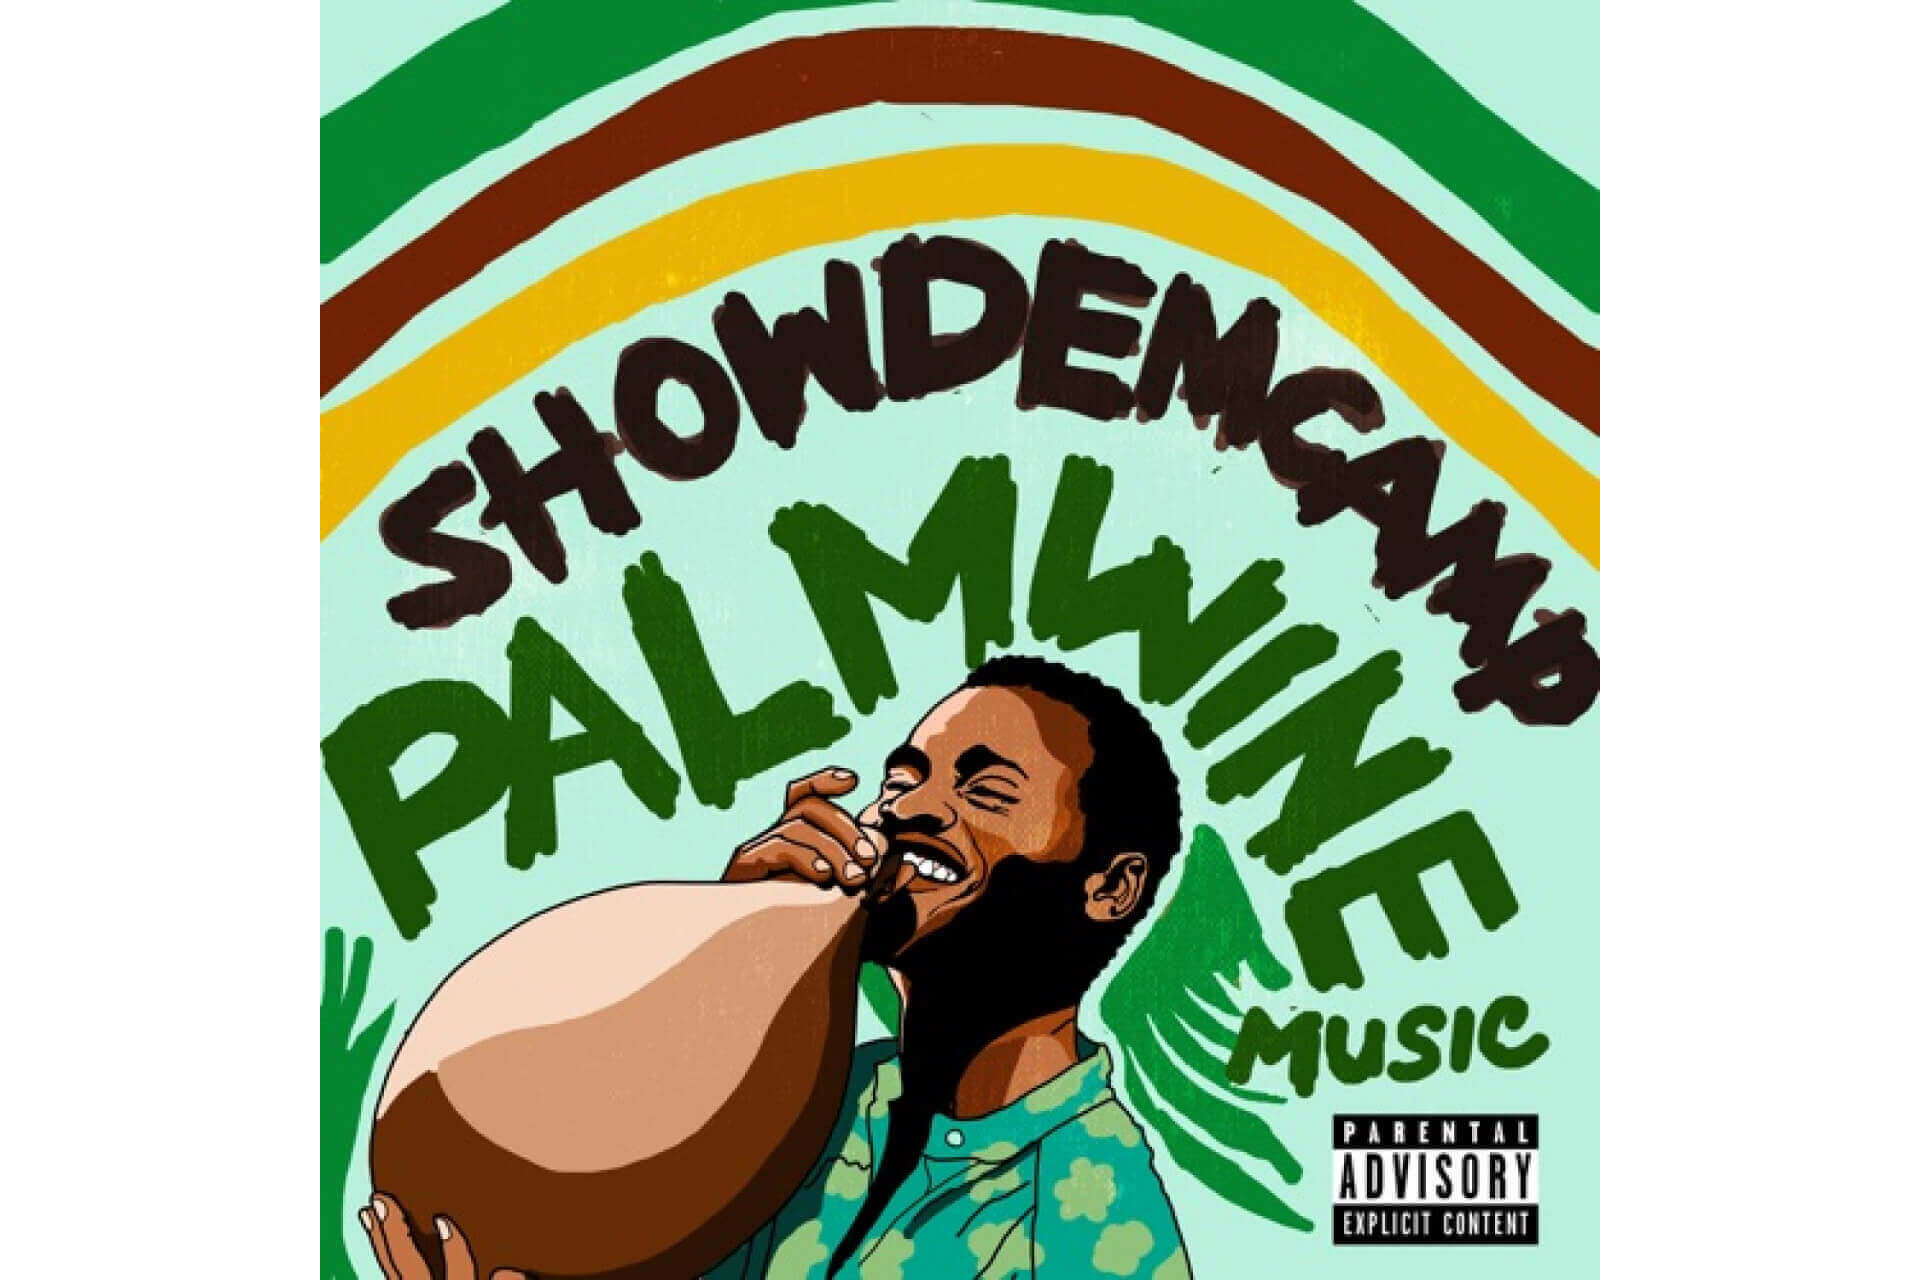 Show Dem Camp - Palmwine Music Vol. 1